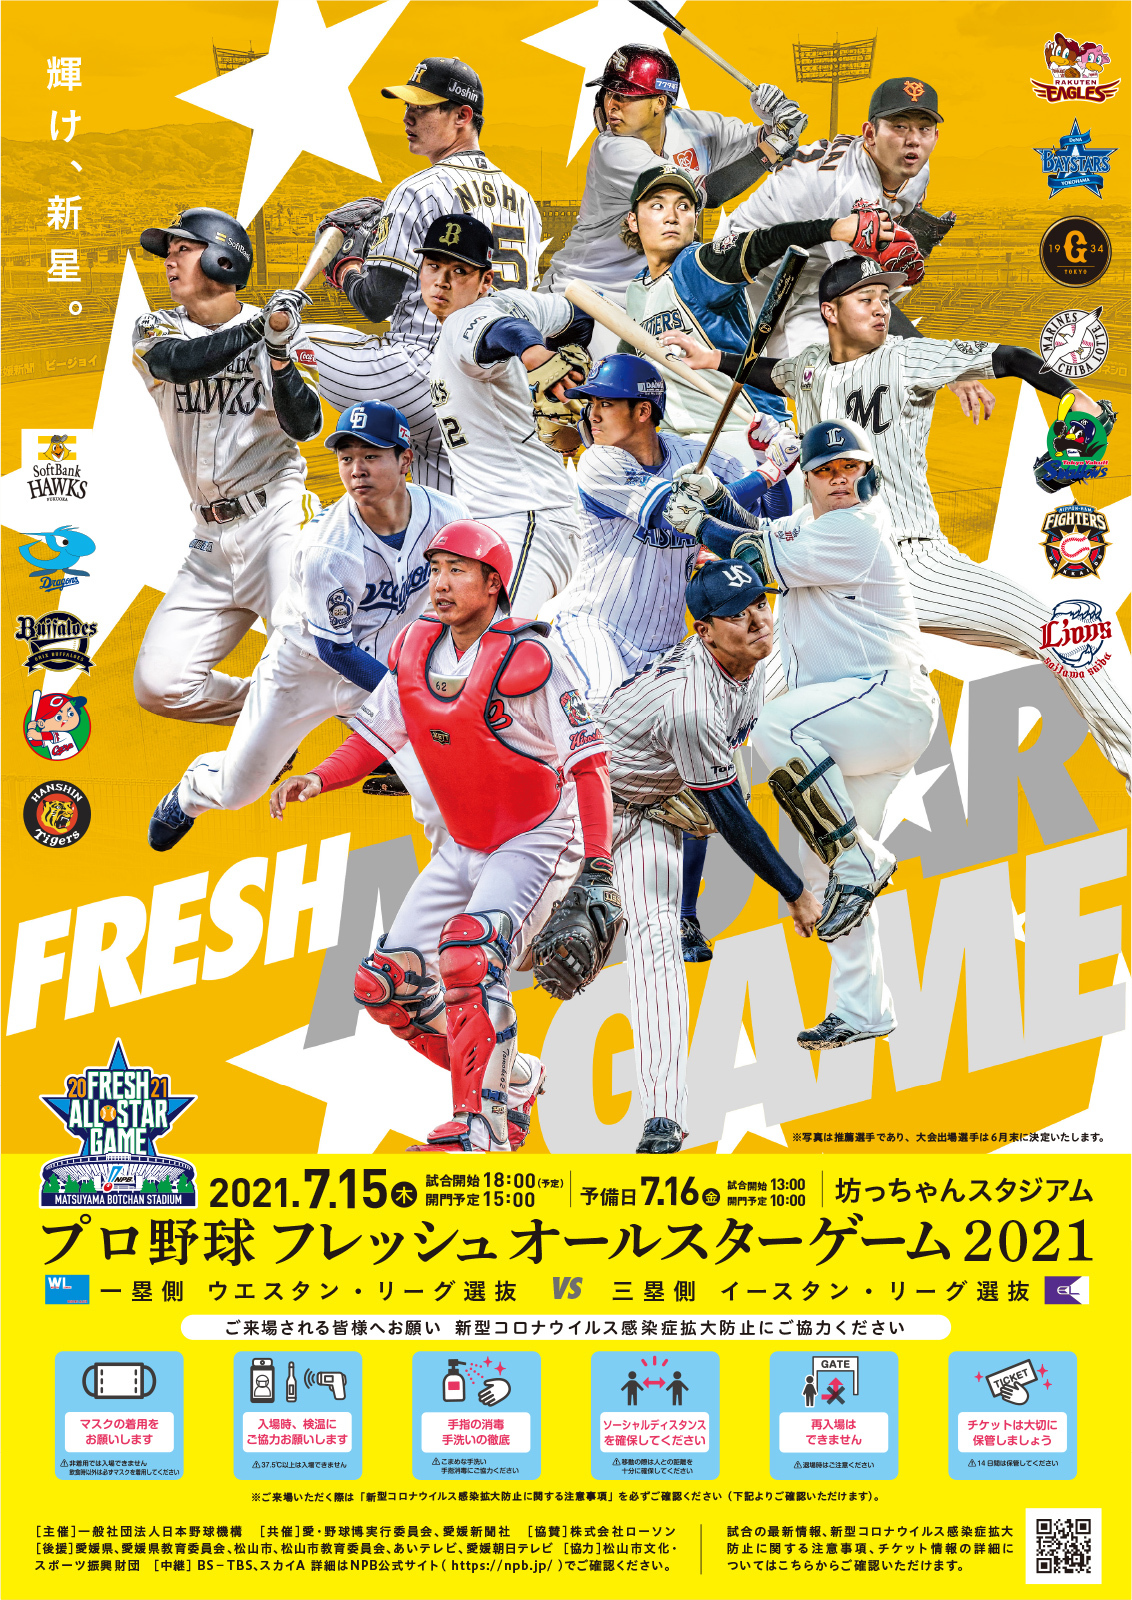 『プロ野球フレッシュオールスターゲーム2021』の出場選手が発表された